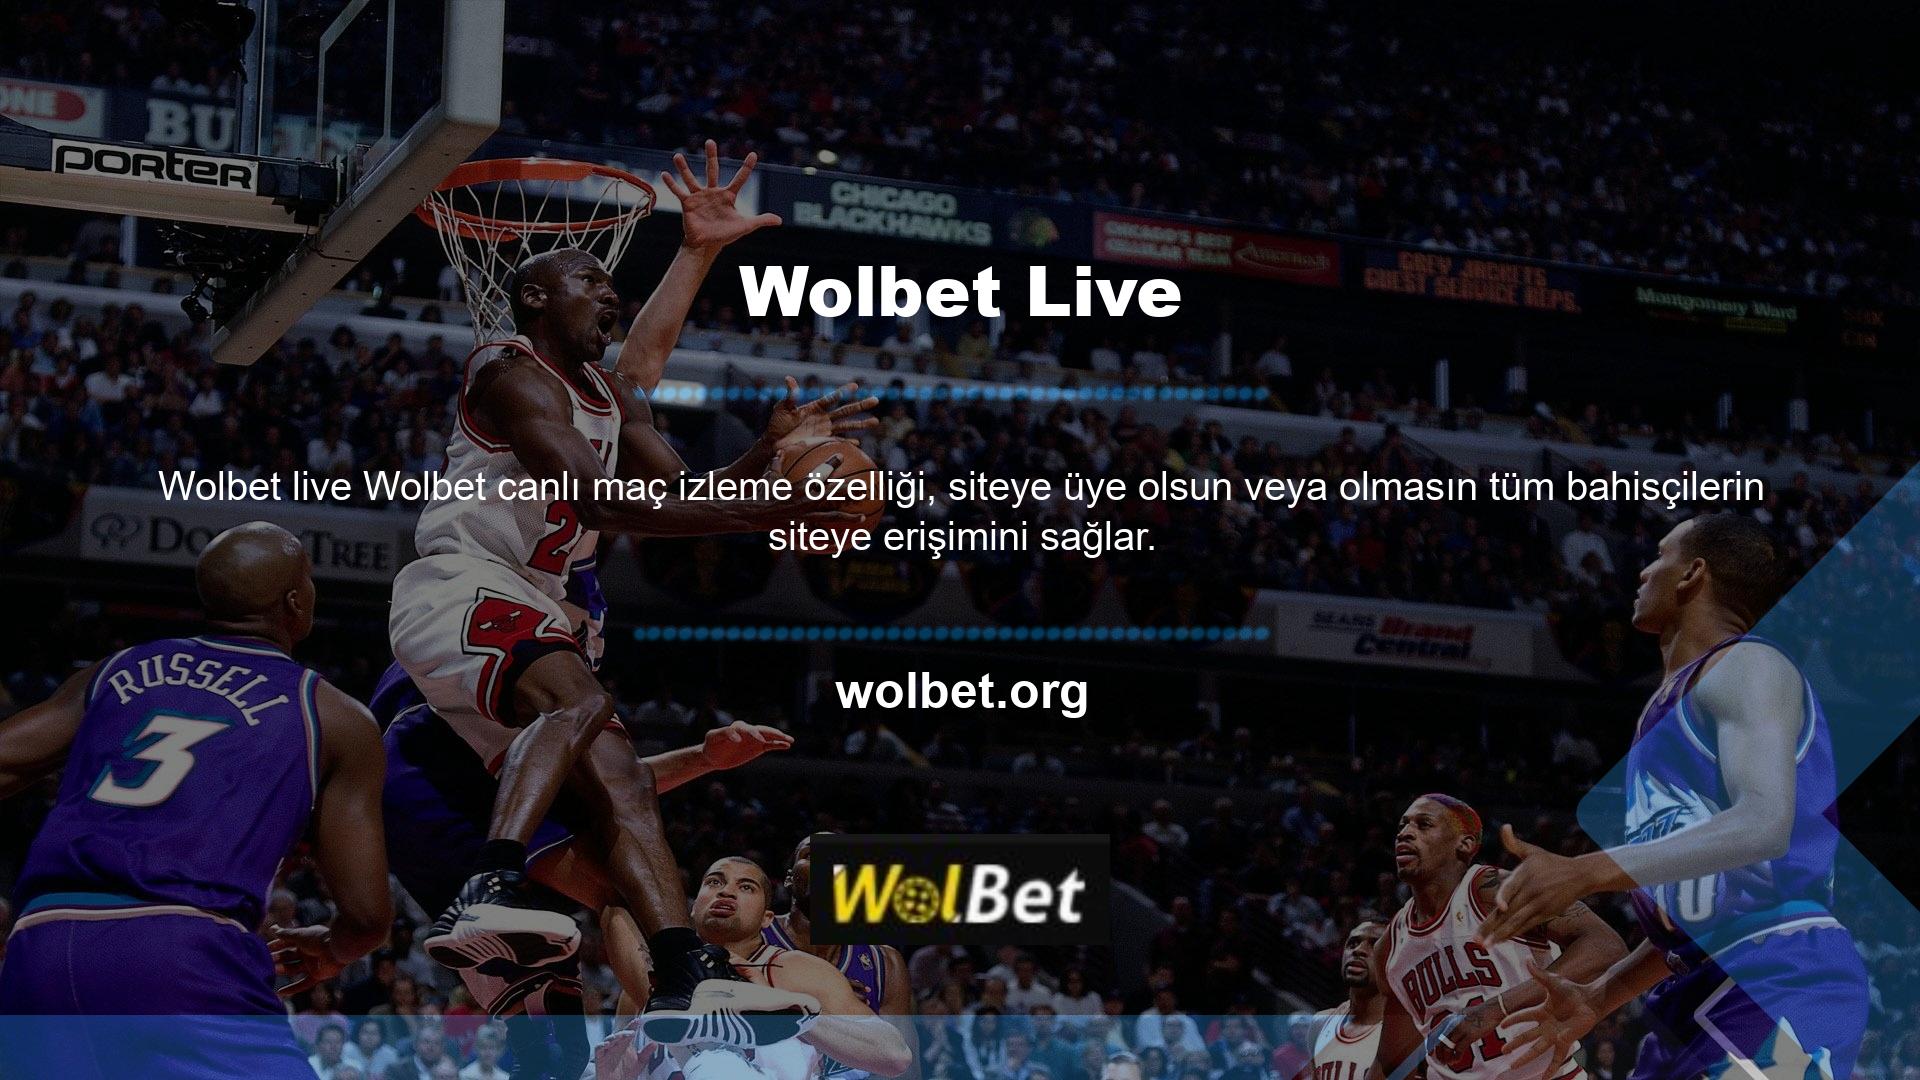 Wolbet Live, kullanıcıların yüksek kaliteli canlı spor etkinliklerini kesintisiz olarak izleyebilecekleri anlamına gelir